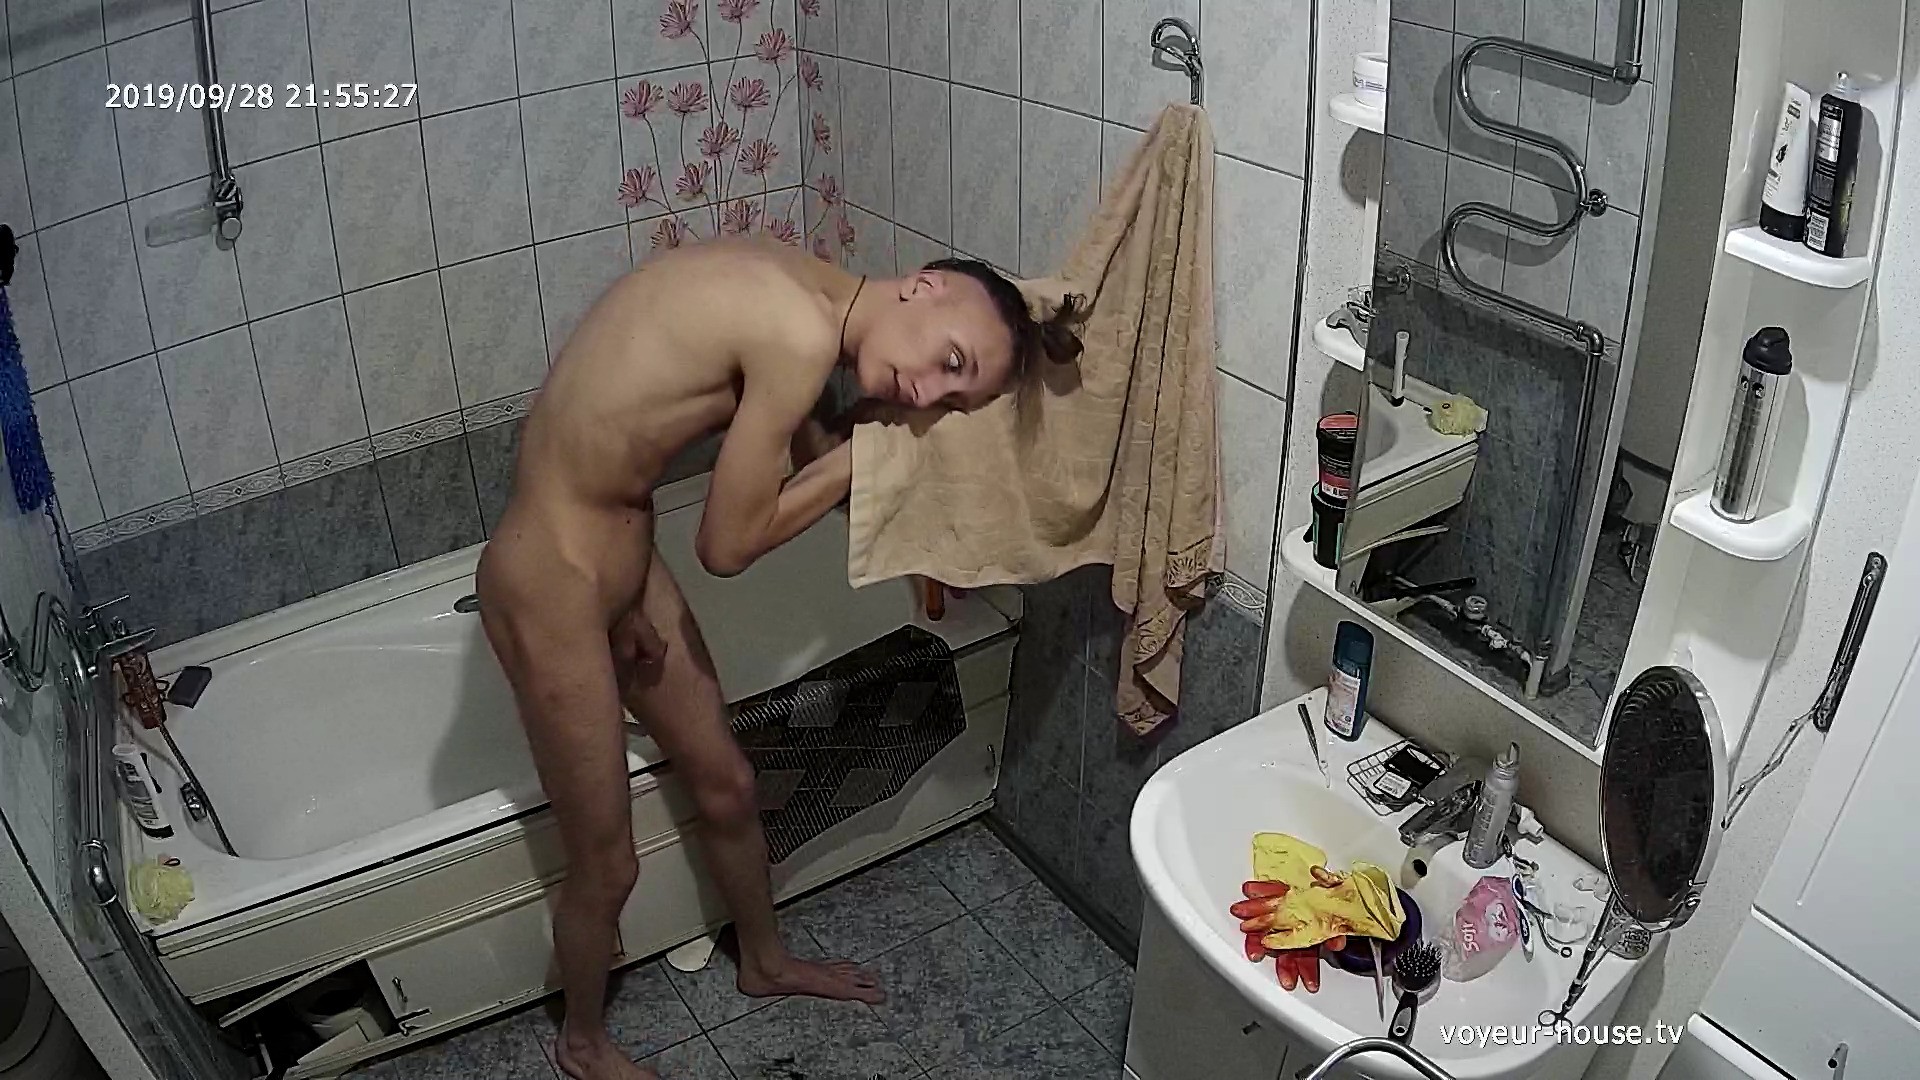 Guest Guy Naked In Bathroom 28 Sep 2019